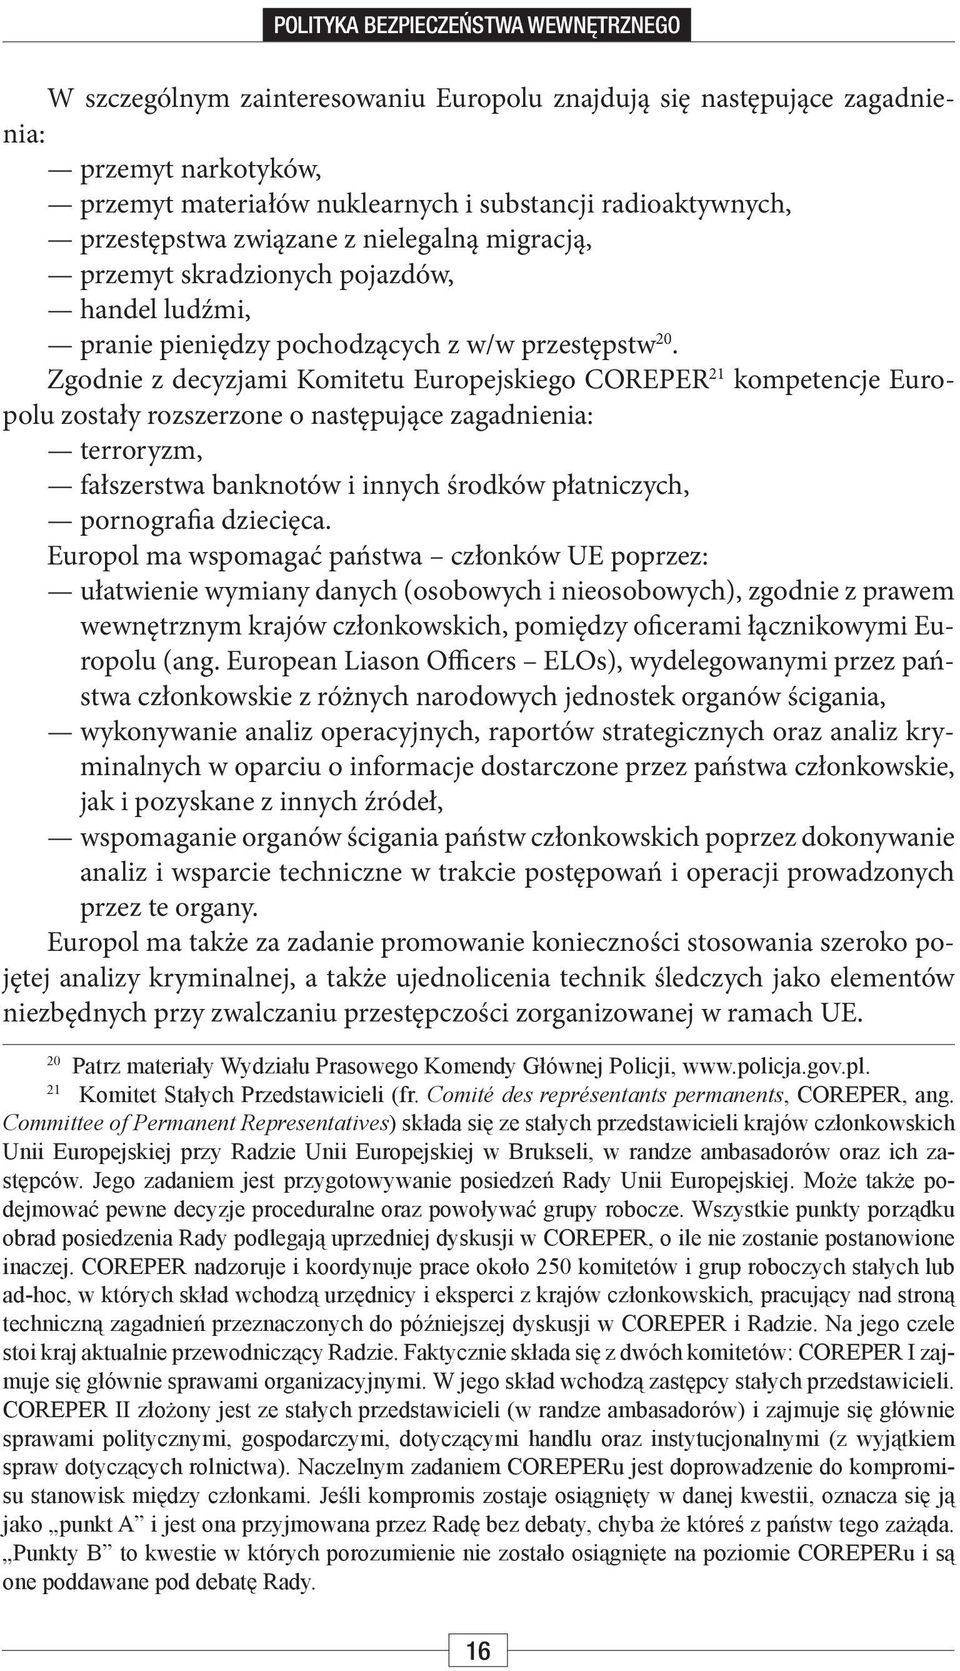 Zgodnie z decyzjami Komitetu Europejskiego COREPER 21 kompetencje Europolu zostały rozszerzone o następujące zagadnienia: terroryzm, fałszerstwa banknotów i innych środków płatniczych, pornografia